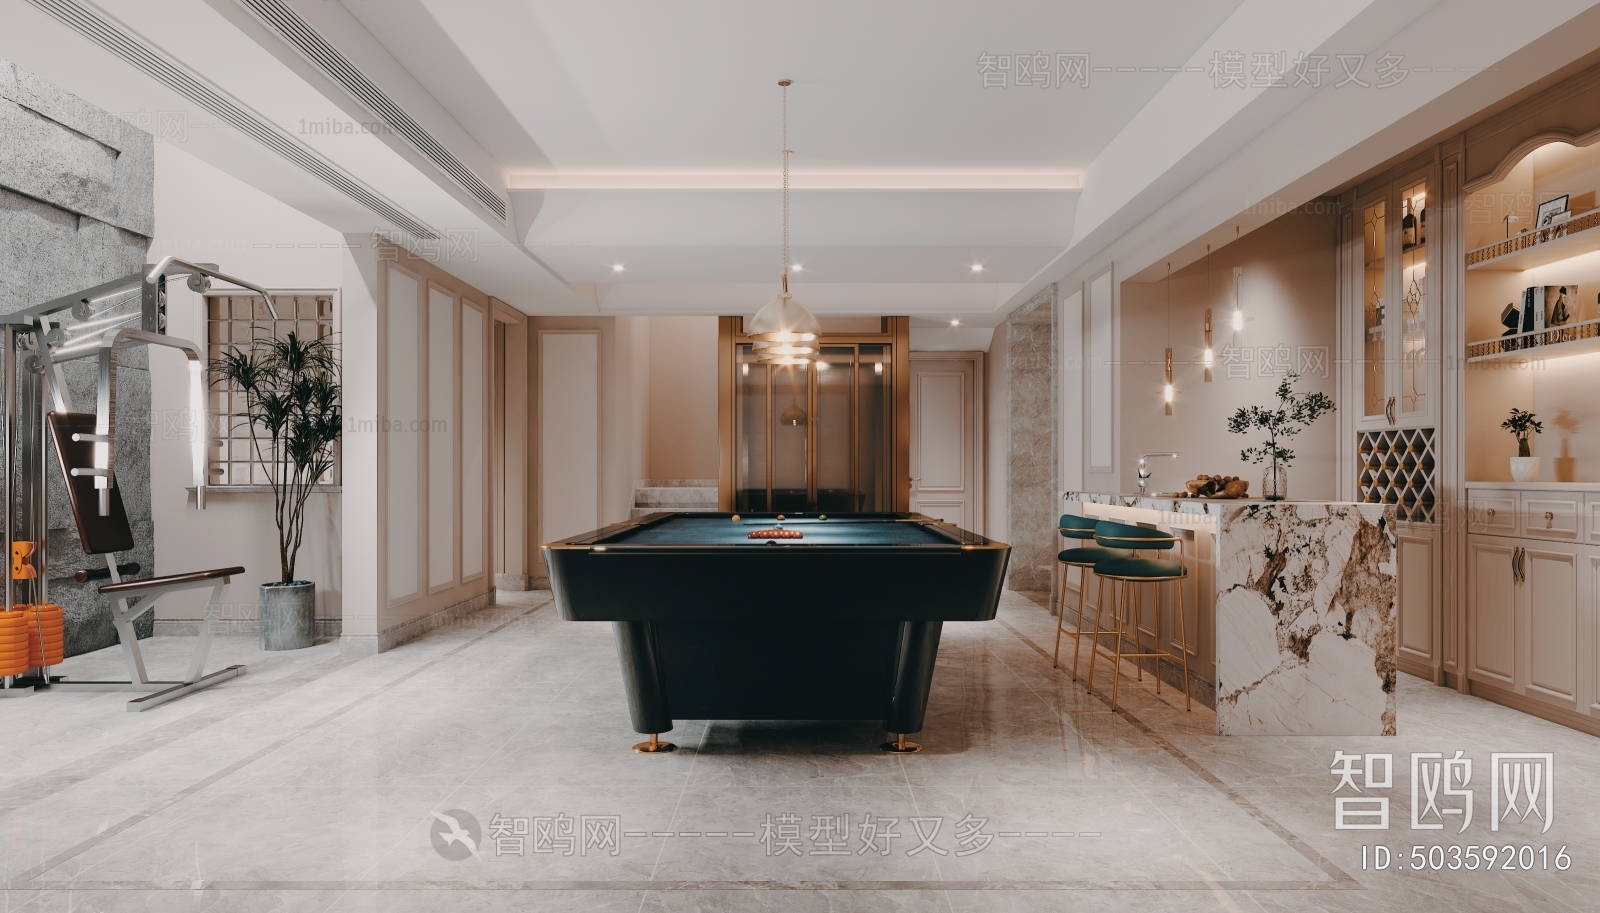 Simple European Style Billiards Room